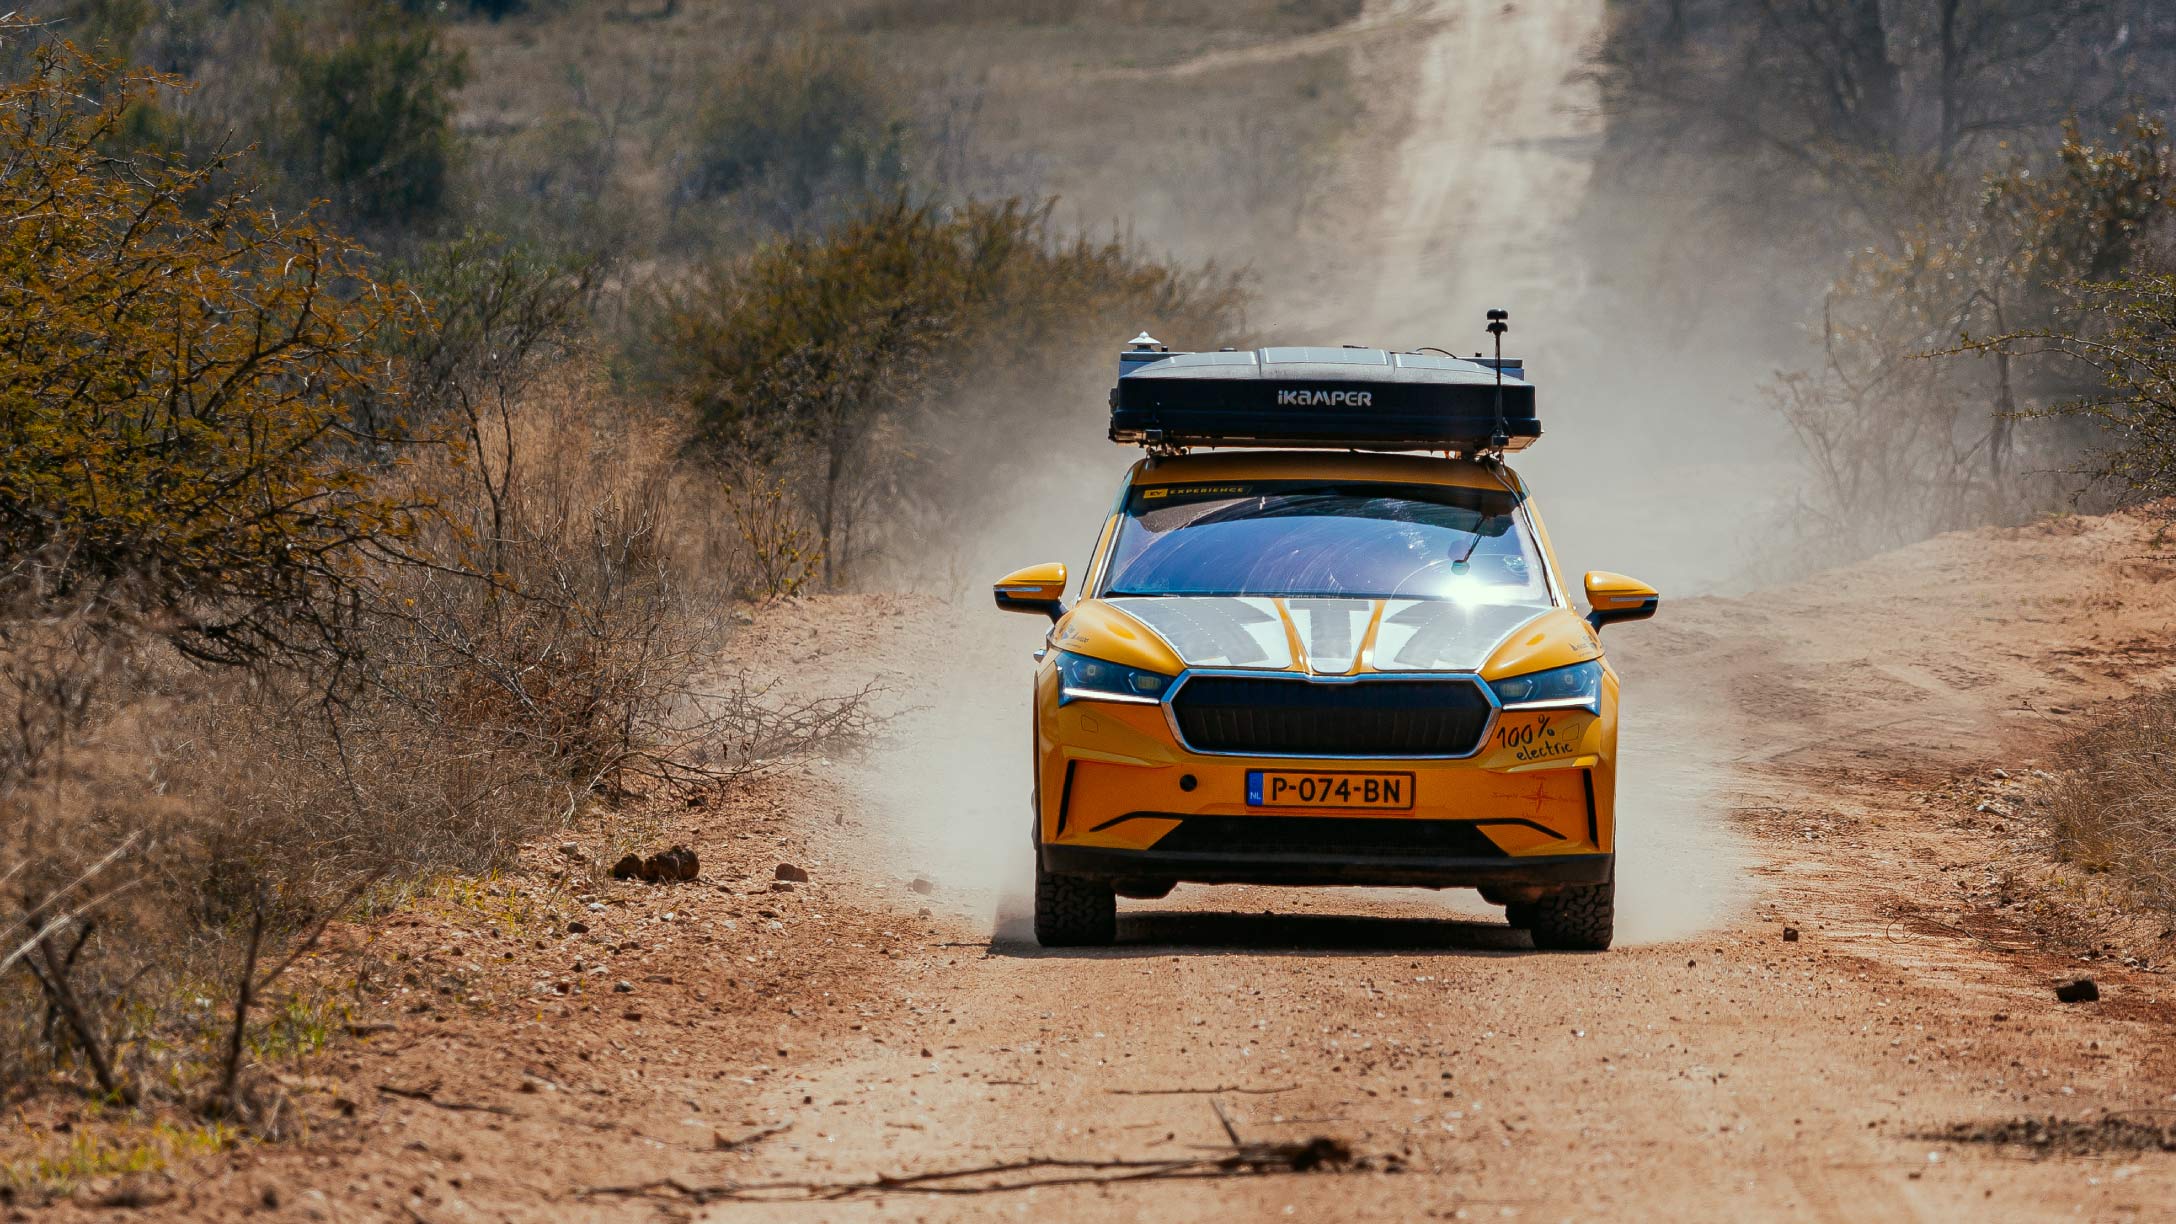 Veicolo elettrico giallo della spedizione 4x4 correndo su una strada sterrata africana